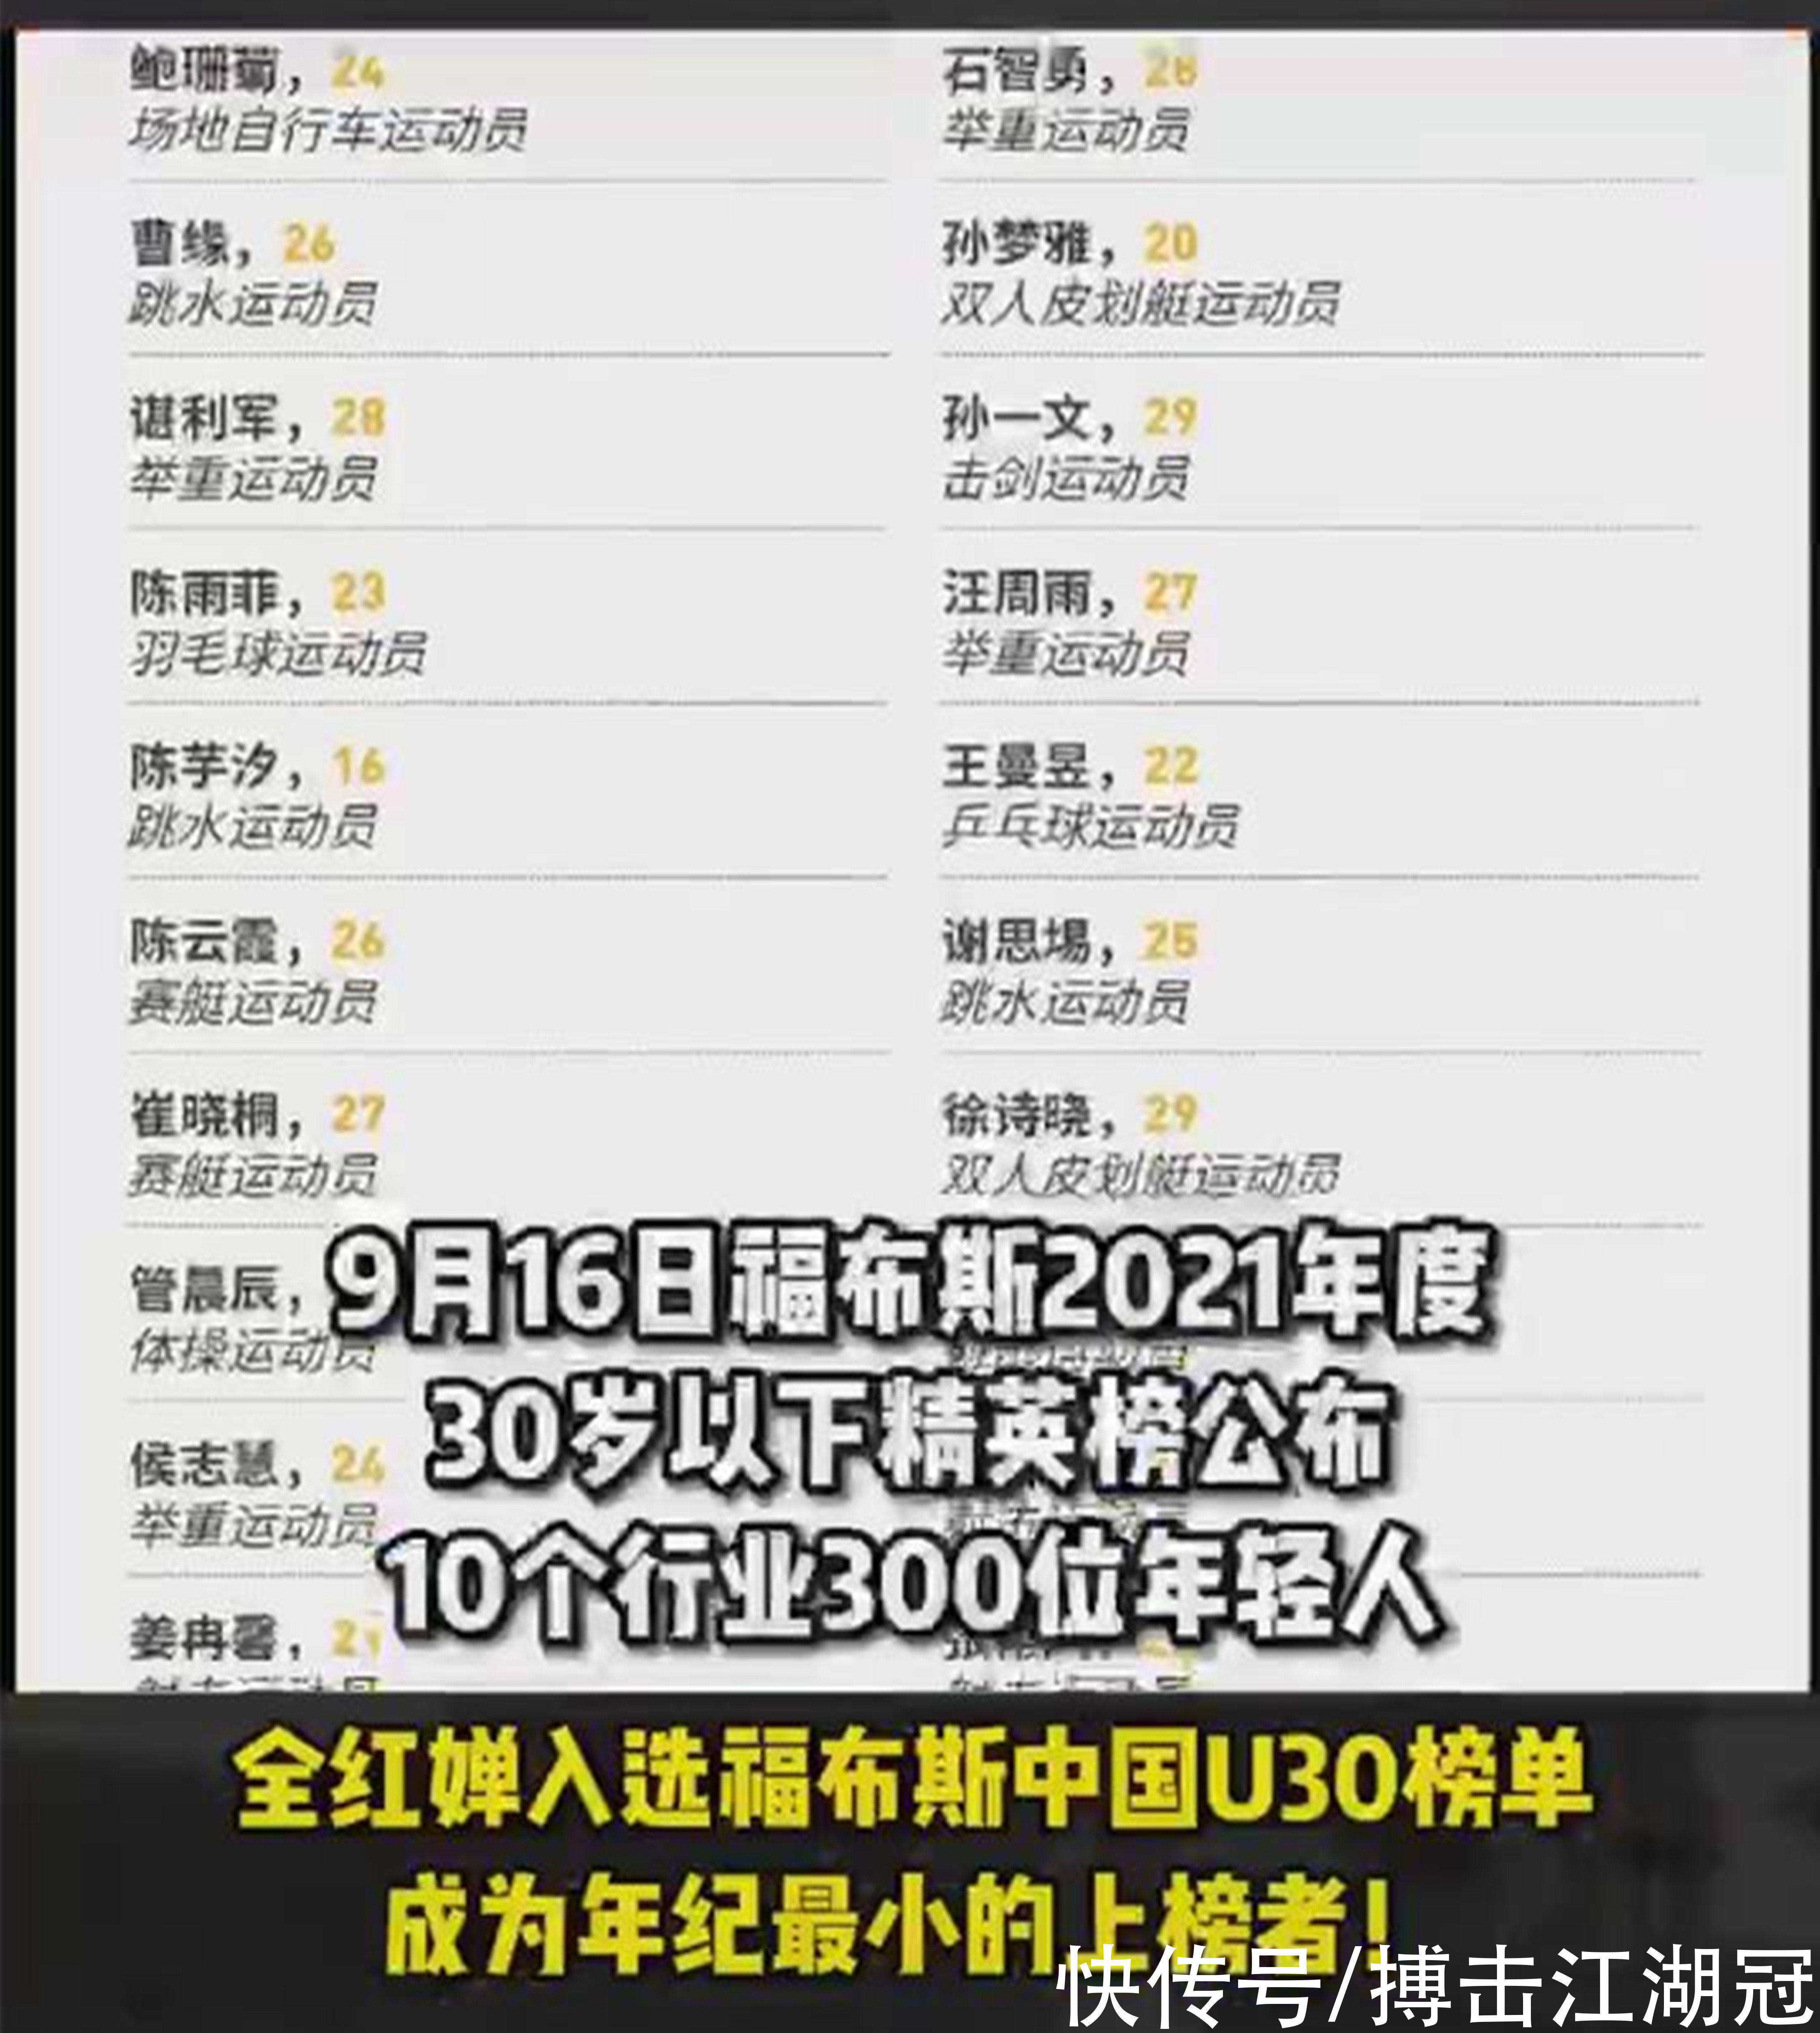 中国区|全红婵再迎两大喜事！成为U30榜单年龄最小者，特步邀请签约代言